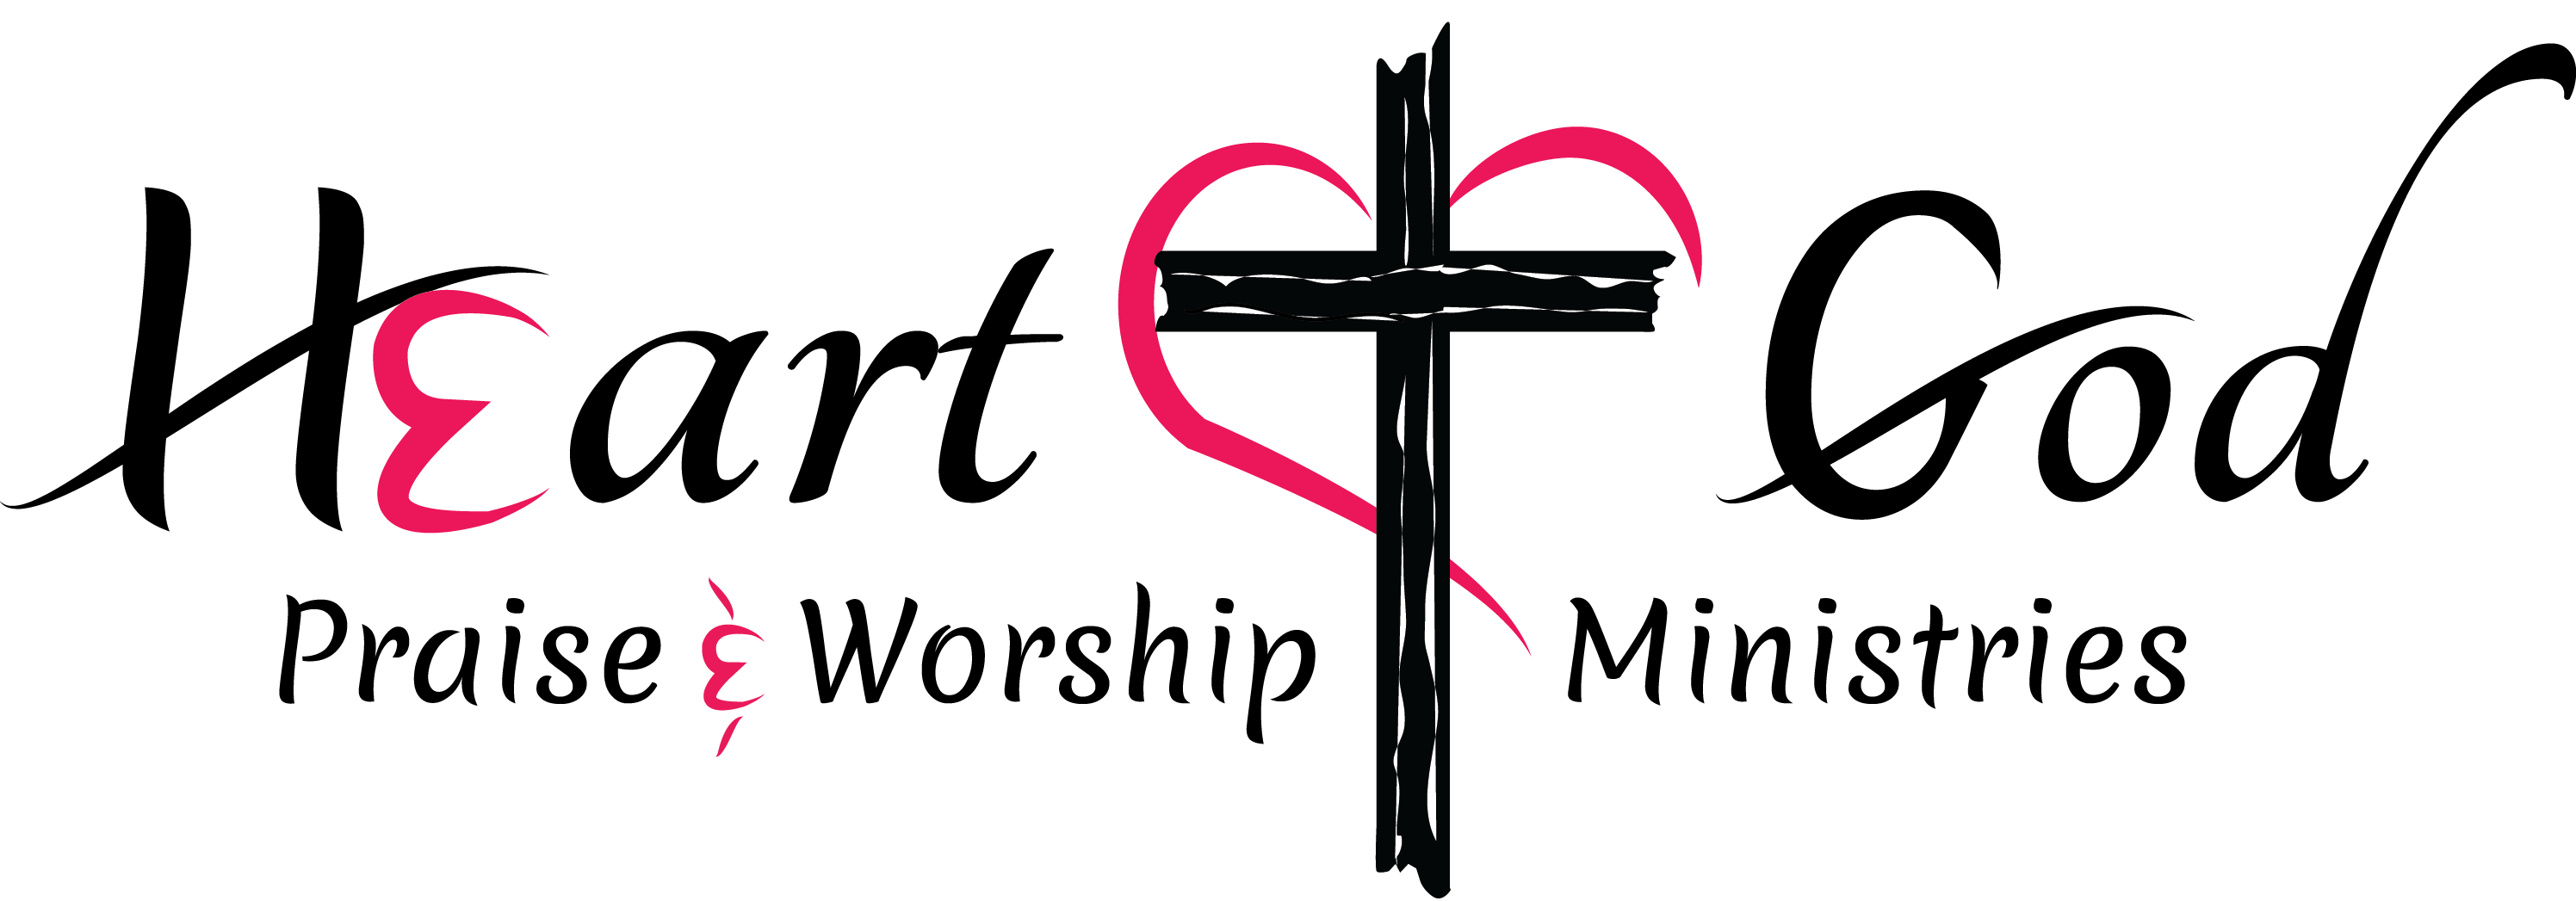 Logo Of Heart of God